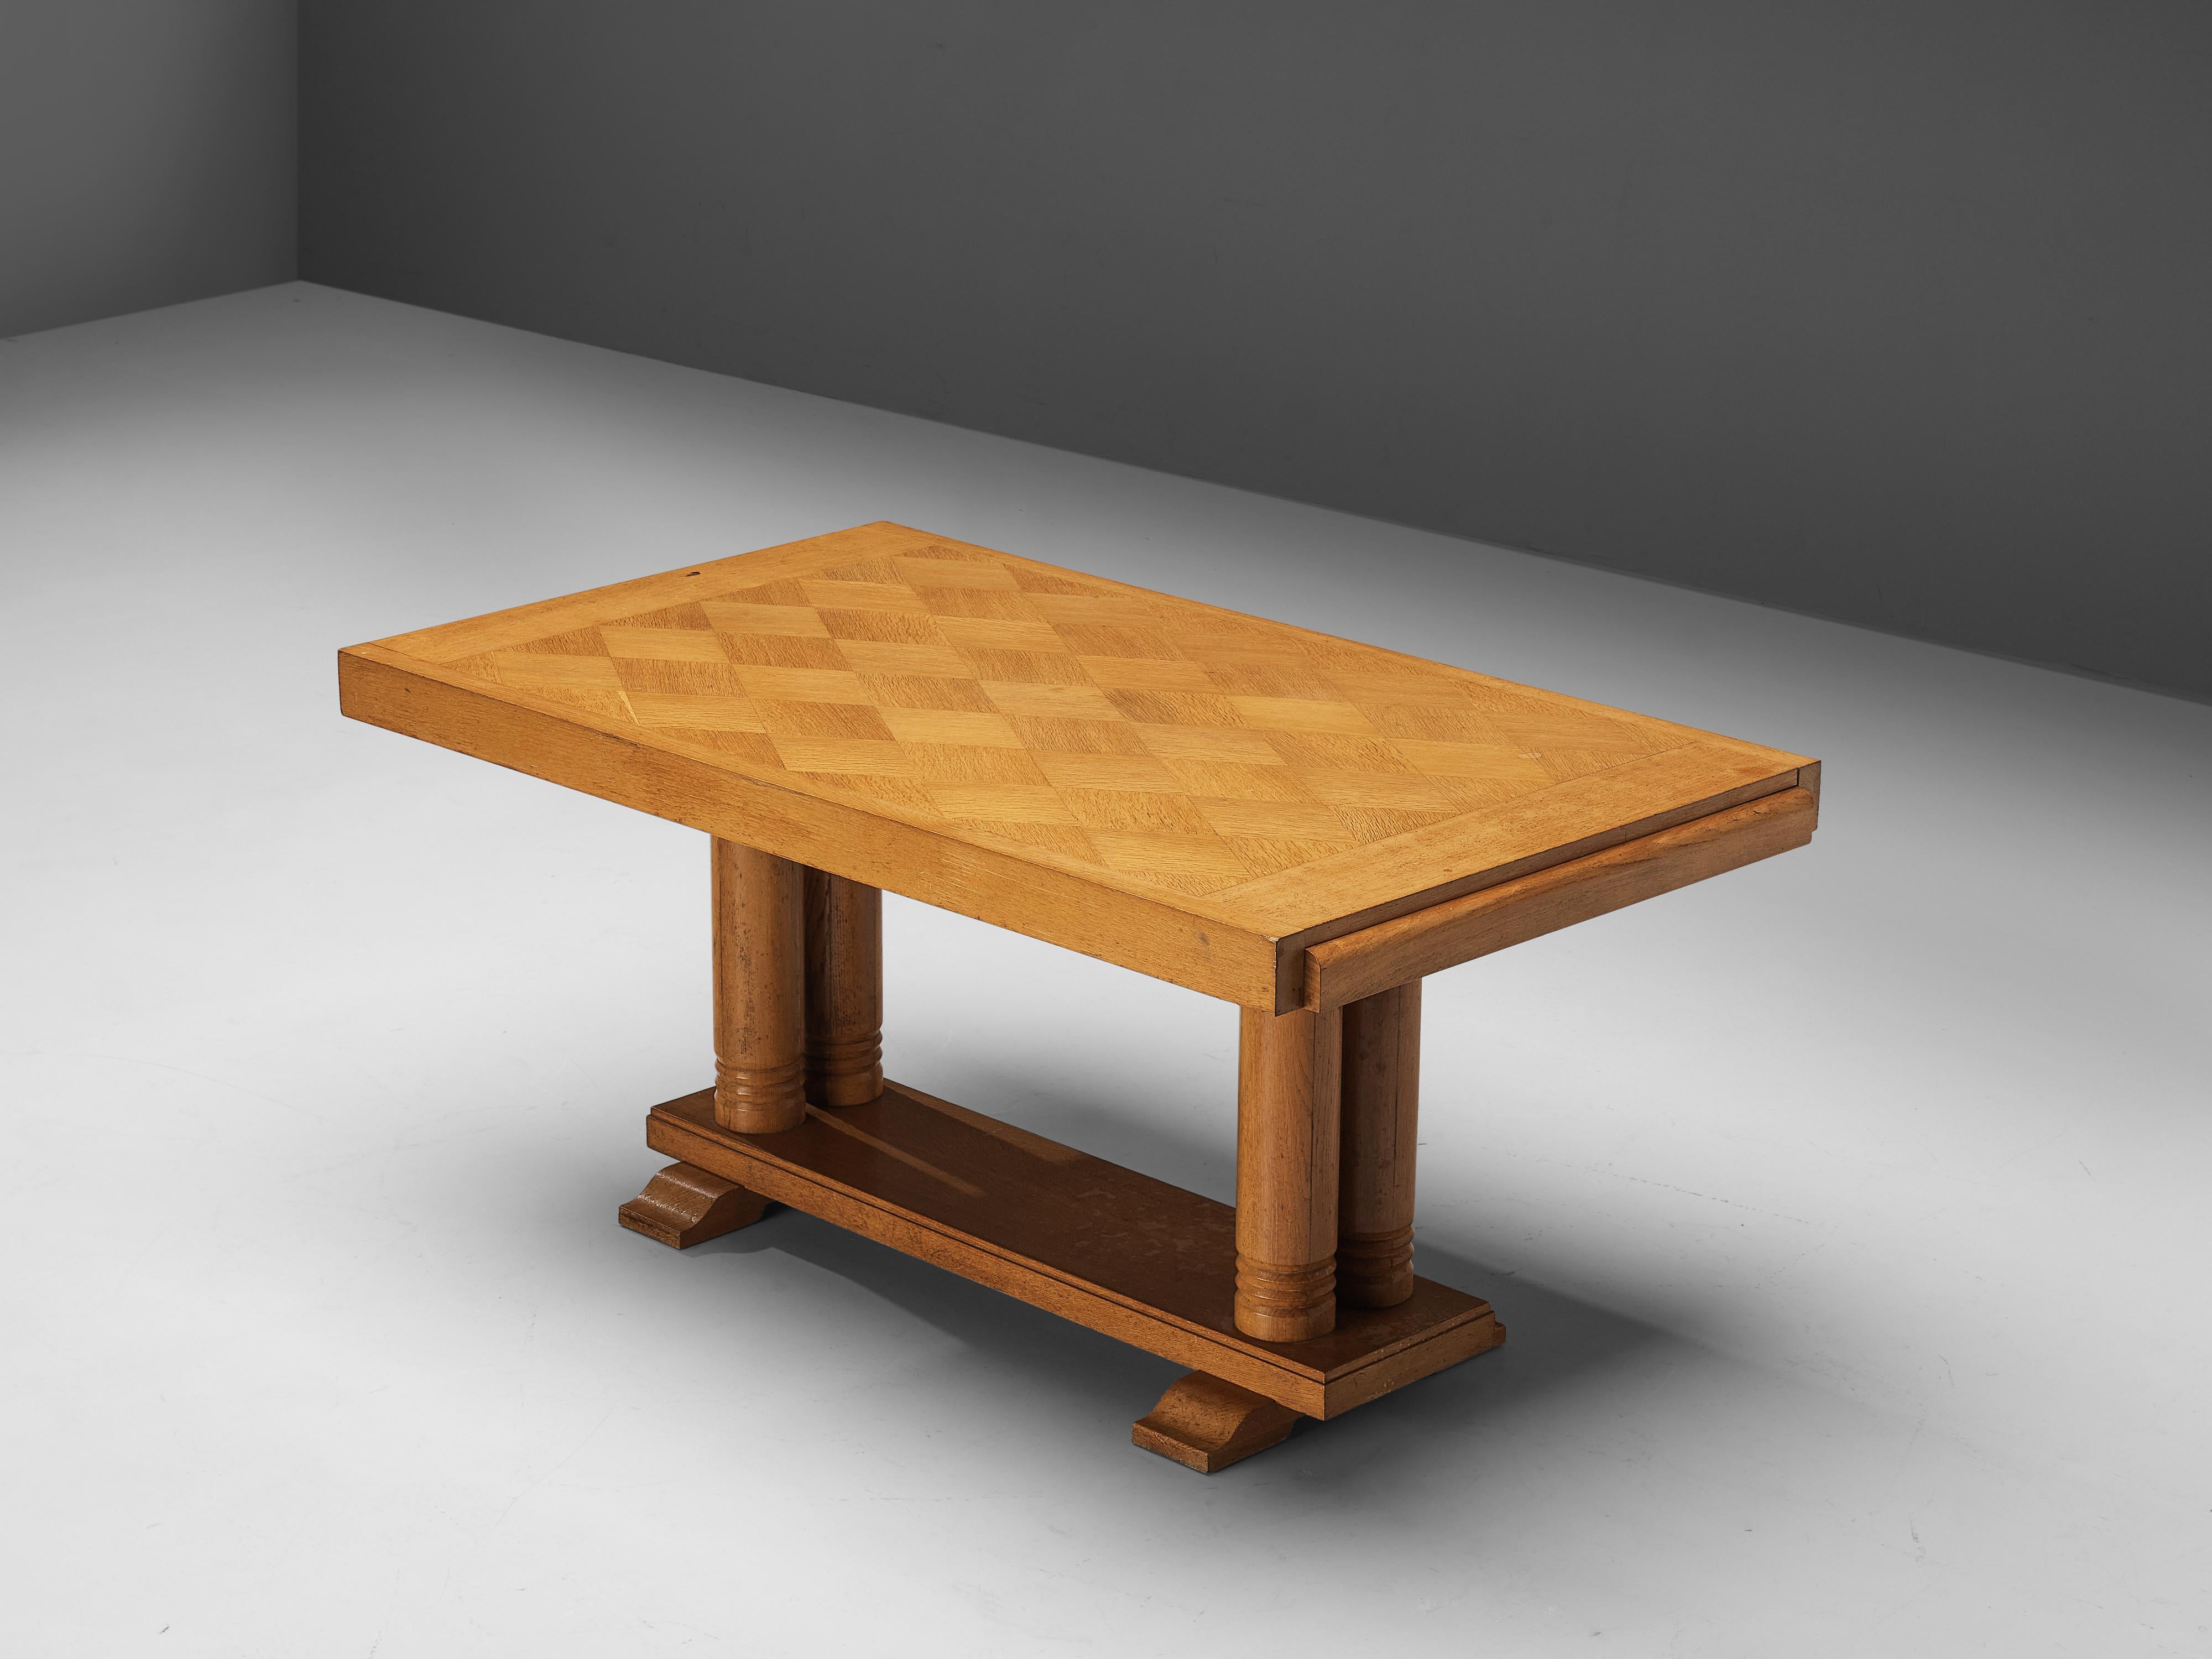 Esstisch, Eiche, Europa, 1950er Jahre

Dieser exzentrische Tisch ist präzise konstruiert, mit geometrischen Formen und geraden Linien, die zu seinem architektonischen Aussehen beitragen. Die Oberseite weist durch die rautenförmige Einlage eine